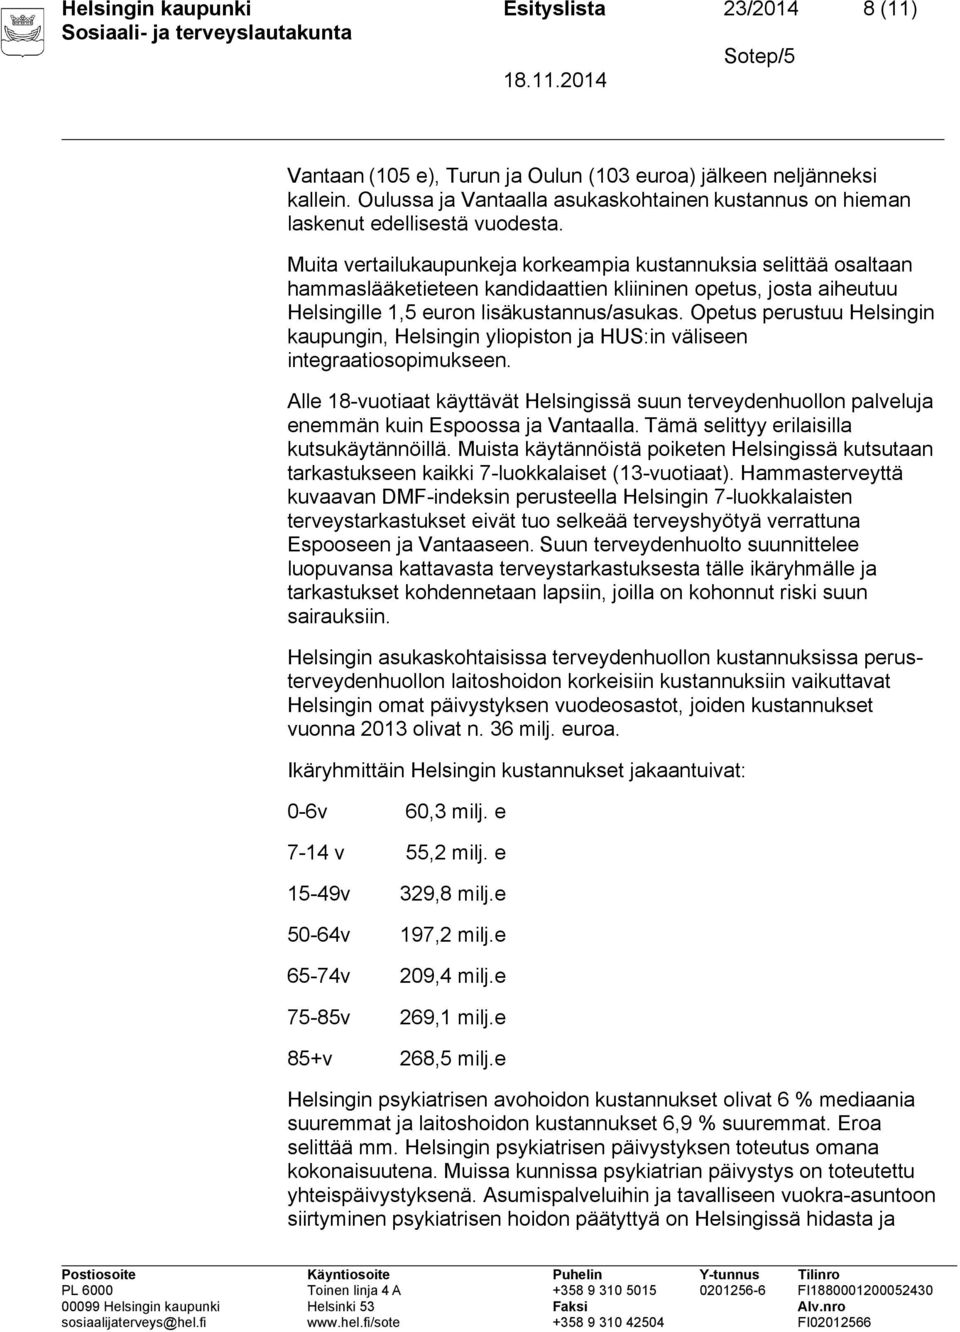 Muita vertailukaupunkeja korkeampia kustannuksia selittää osaltaan hammaslääketieteen kandidaattien kliininen opetus, josta aiheutuu Helsingille 1,5 euron lisäkustannus/asukas.